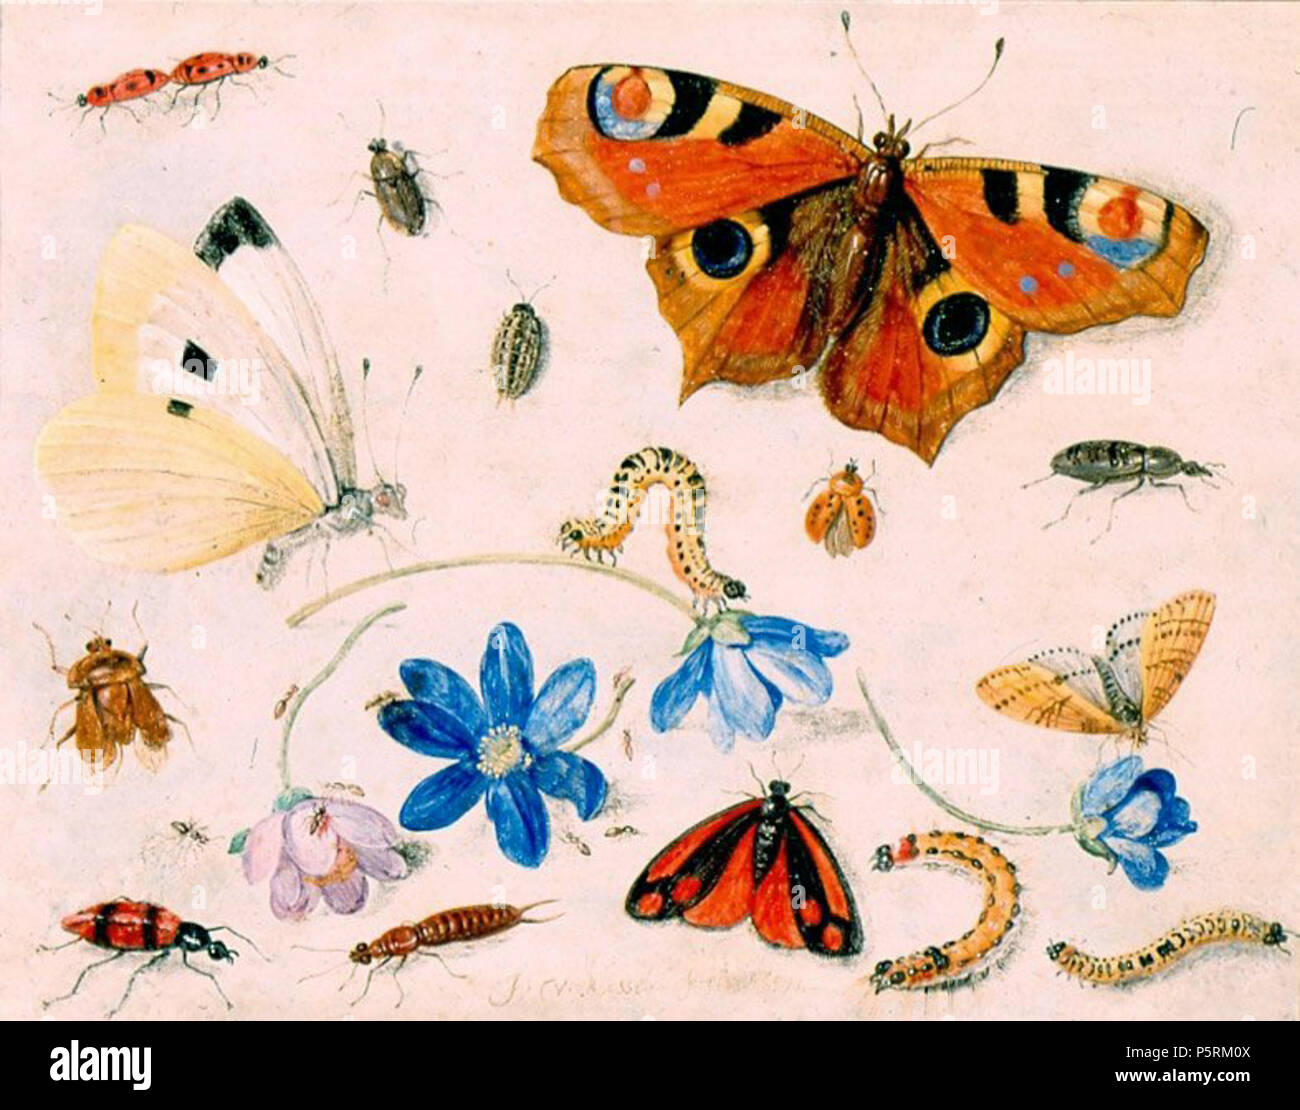 N/A. Schmetterlinge, Raupen, Insekten und Blumen von: Jan van de Velde (1626 - 1679), Öl auf Kupfer, 1659, Museum für Kunst. 1659. N/A 252 Schmetterlinge, Raupen, Insekten und Blumen von Jan Van Kessel, 1659, Museum für Kunst Stockfoto